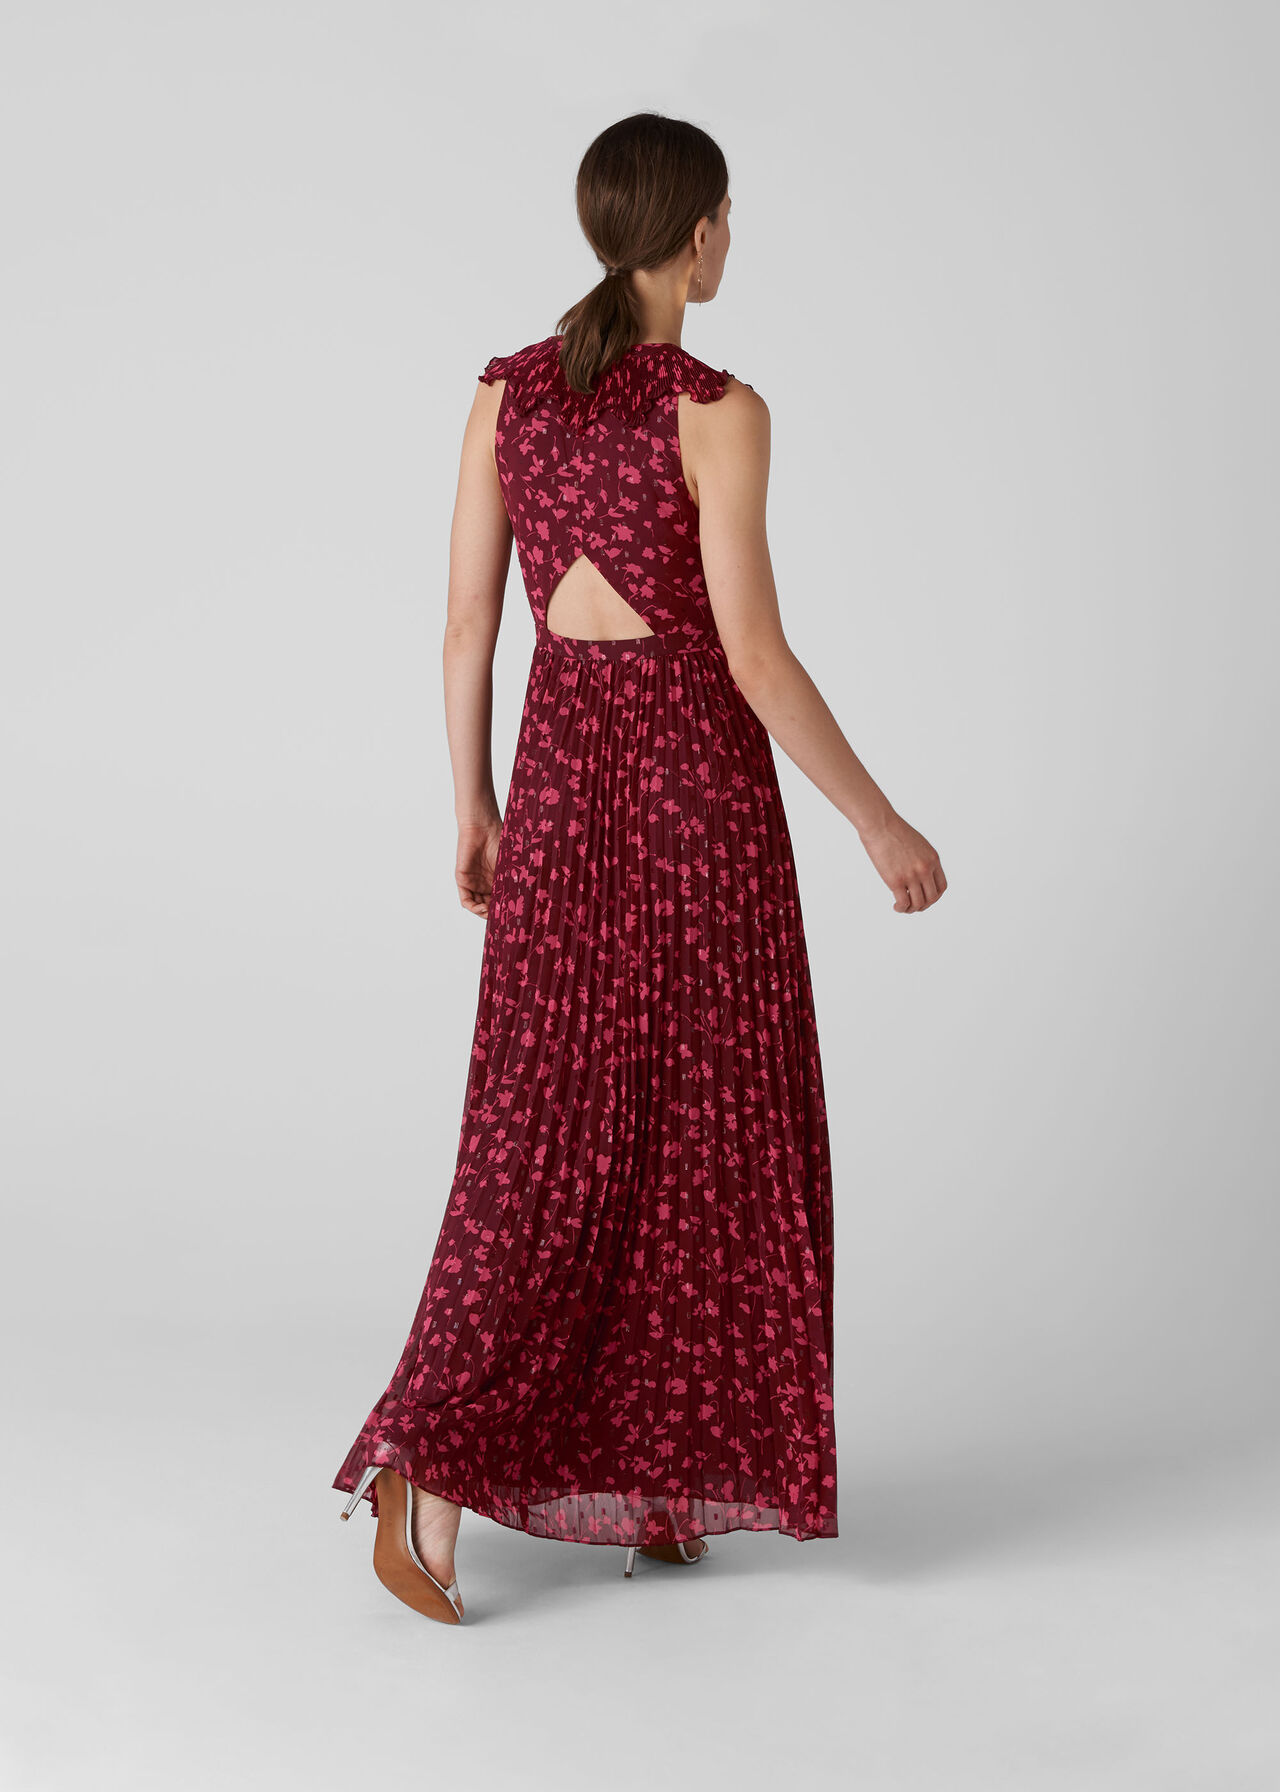 Adalise Celia Print Dress Pink/Multi